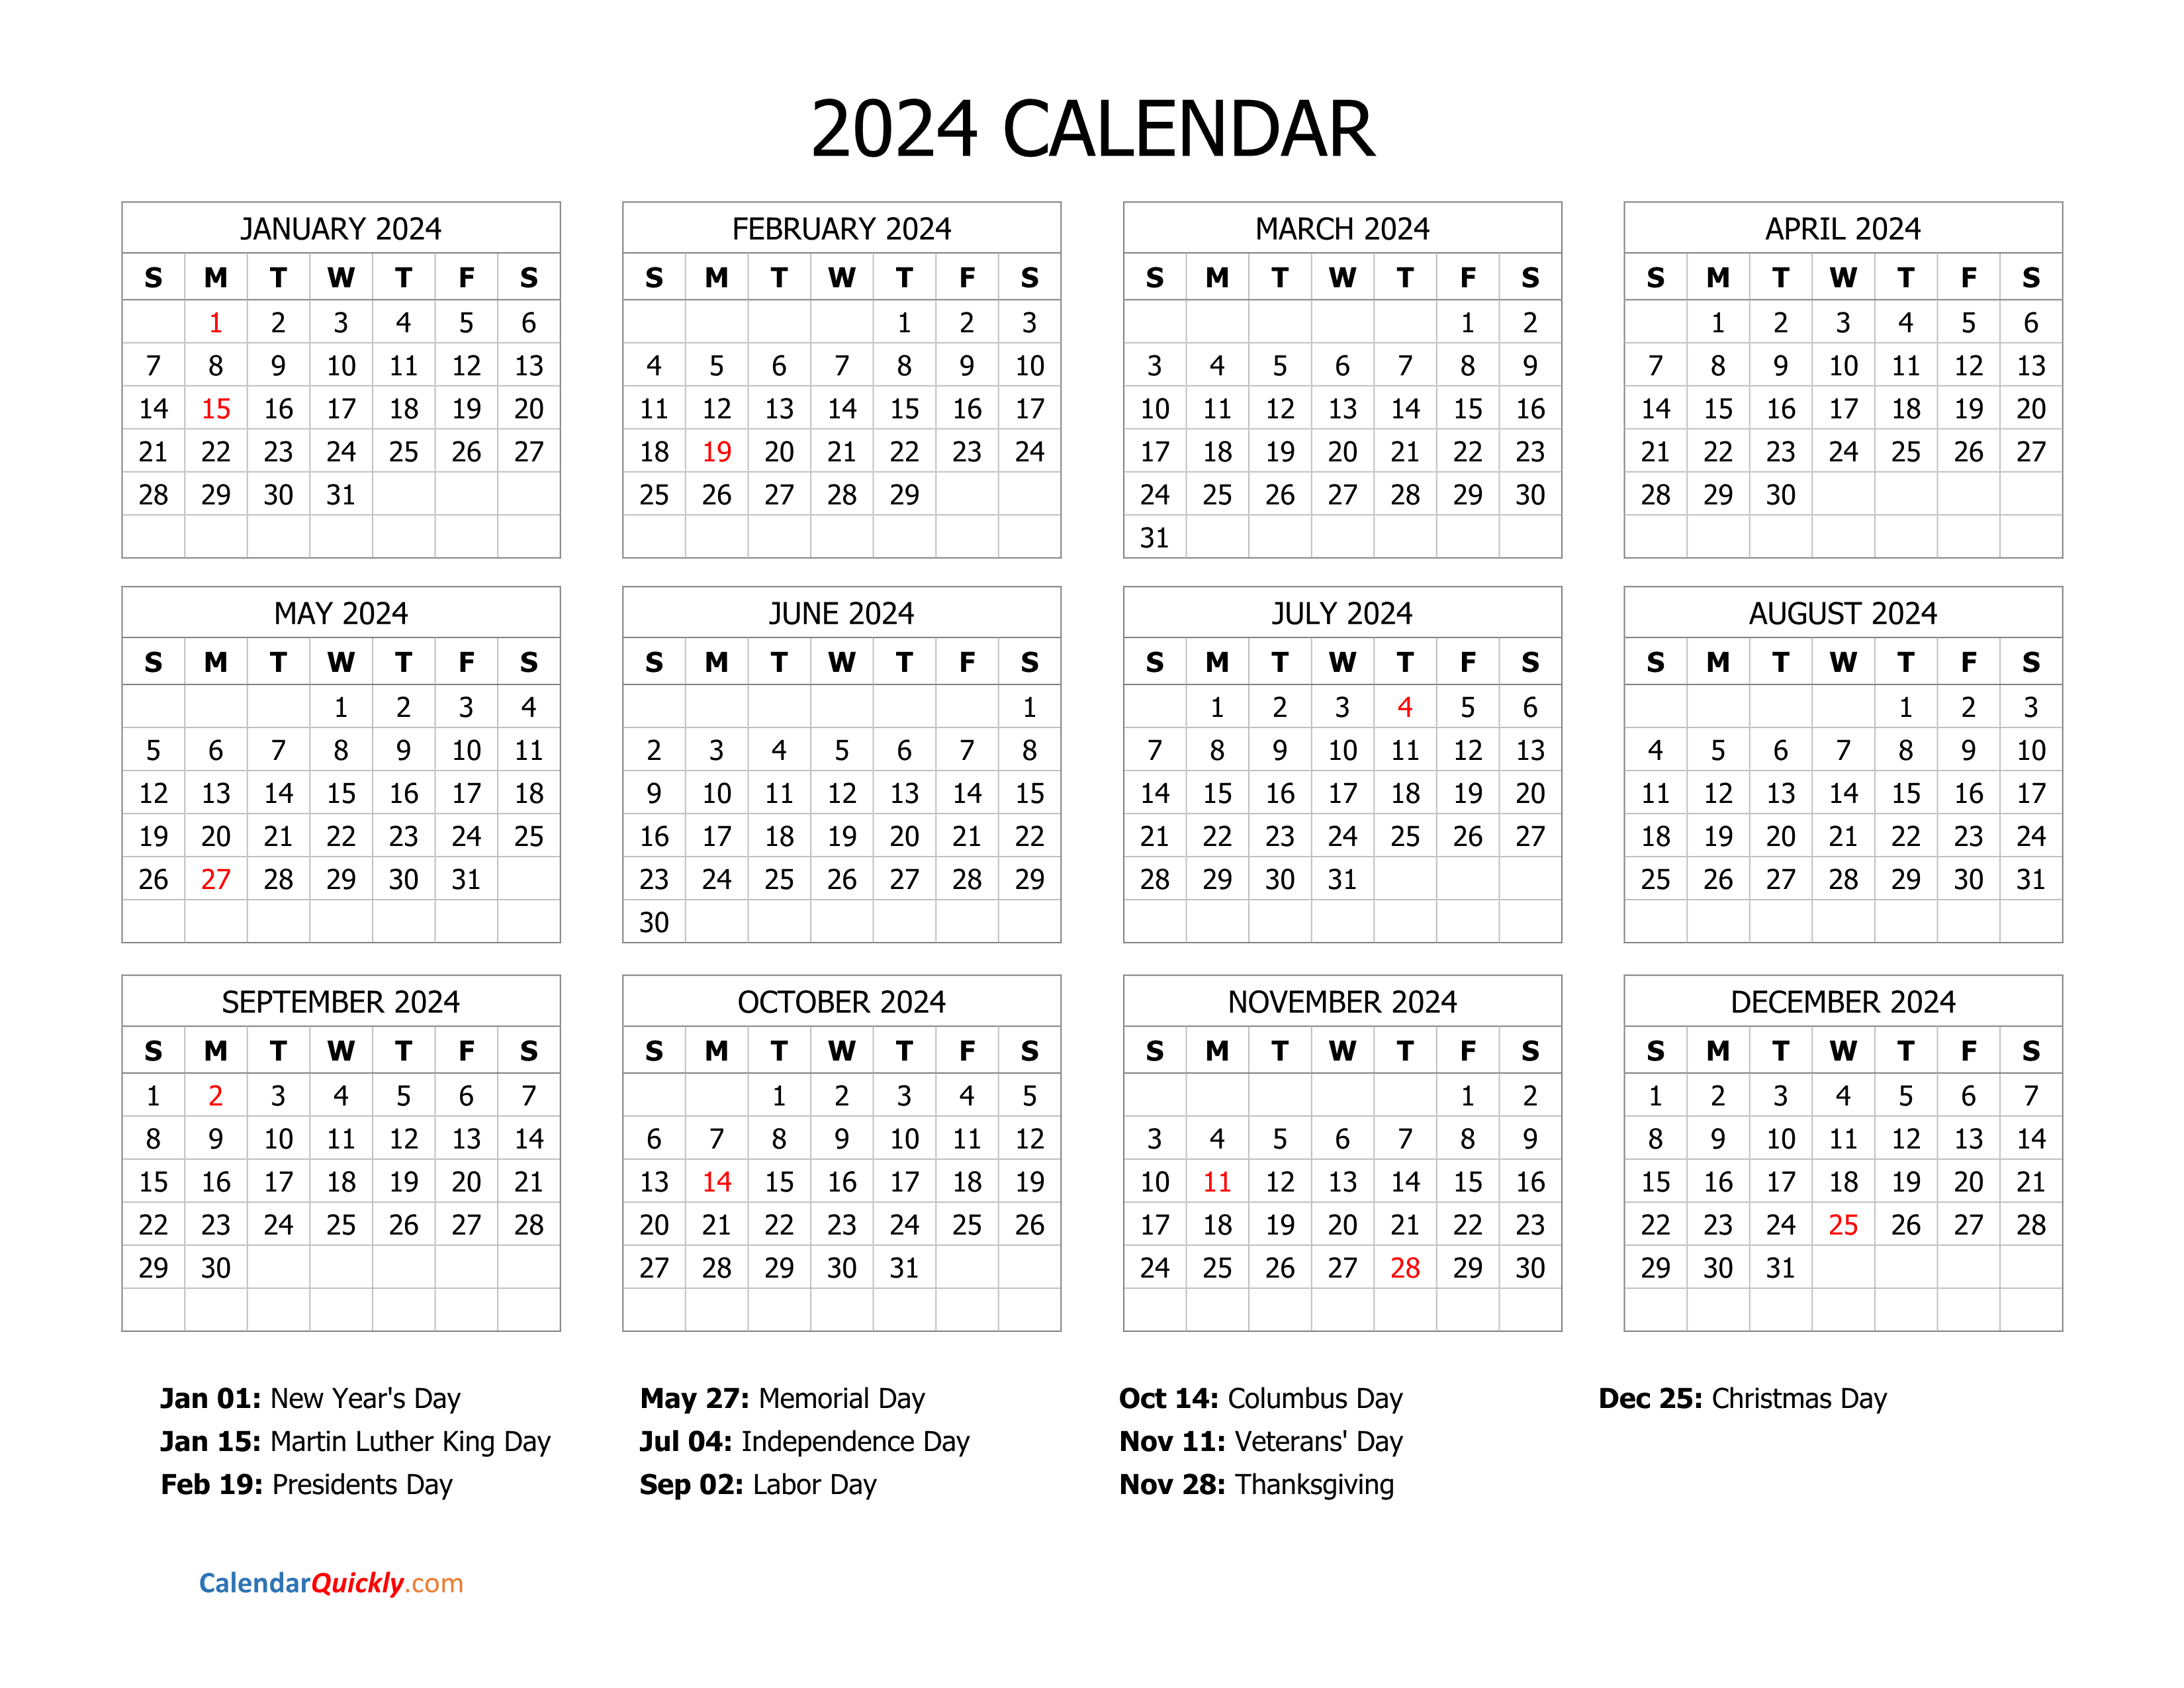 monday-2024-calendar-horizontal-calendar-quickly-2024-calendar-printable